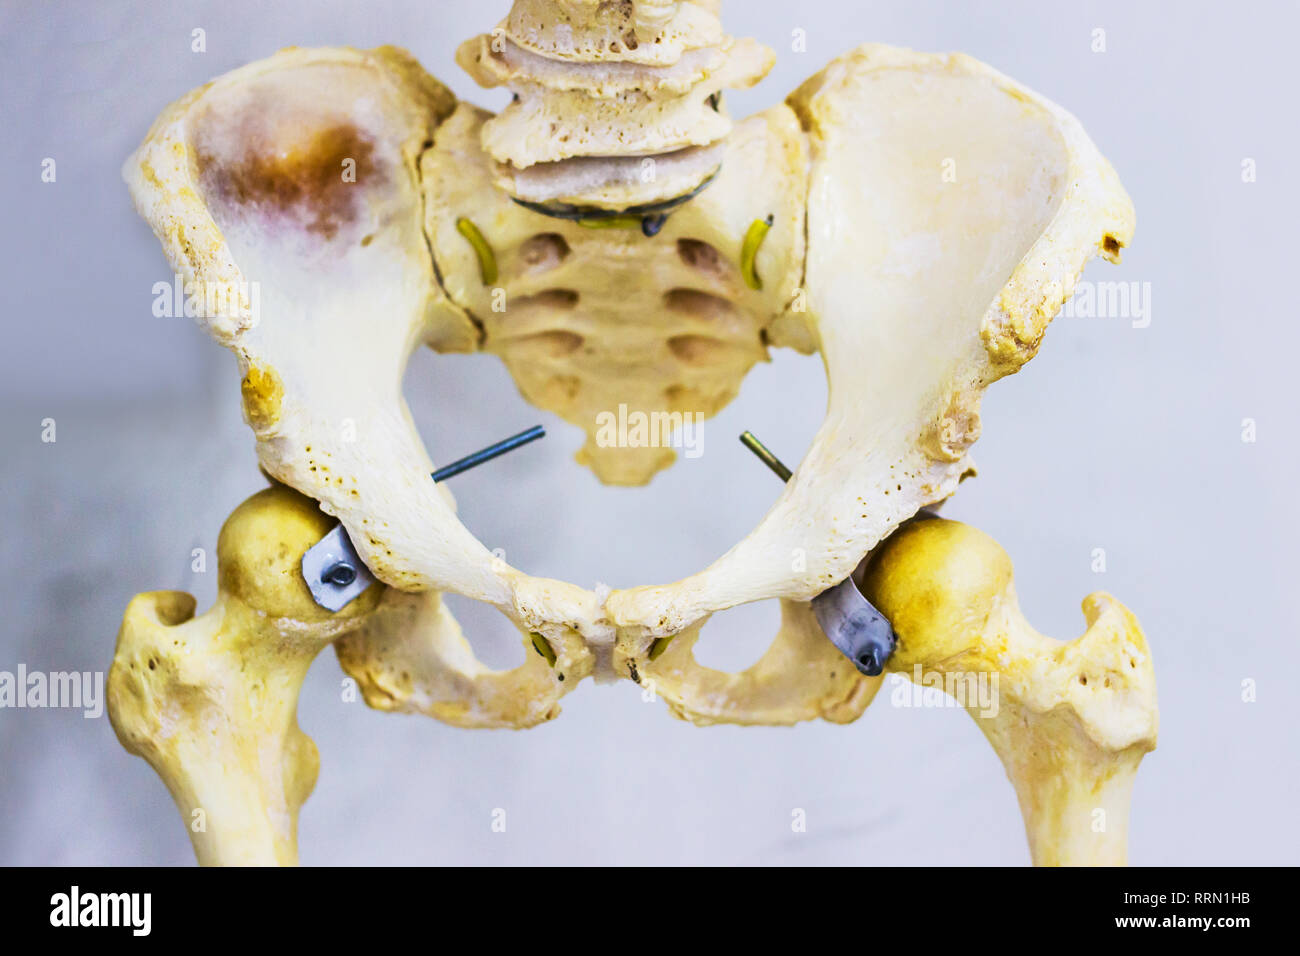 Scheletro umano articolati di Anca anatomia mostra sacrum, anca, osso femore e abbassare la vertebra lombare Foto Stock